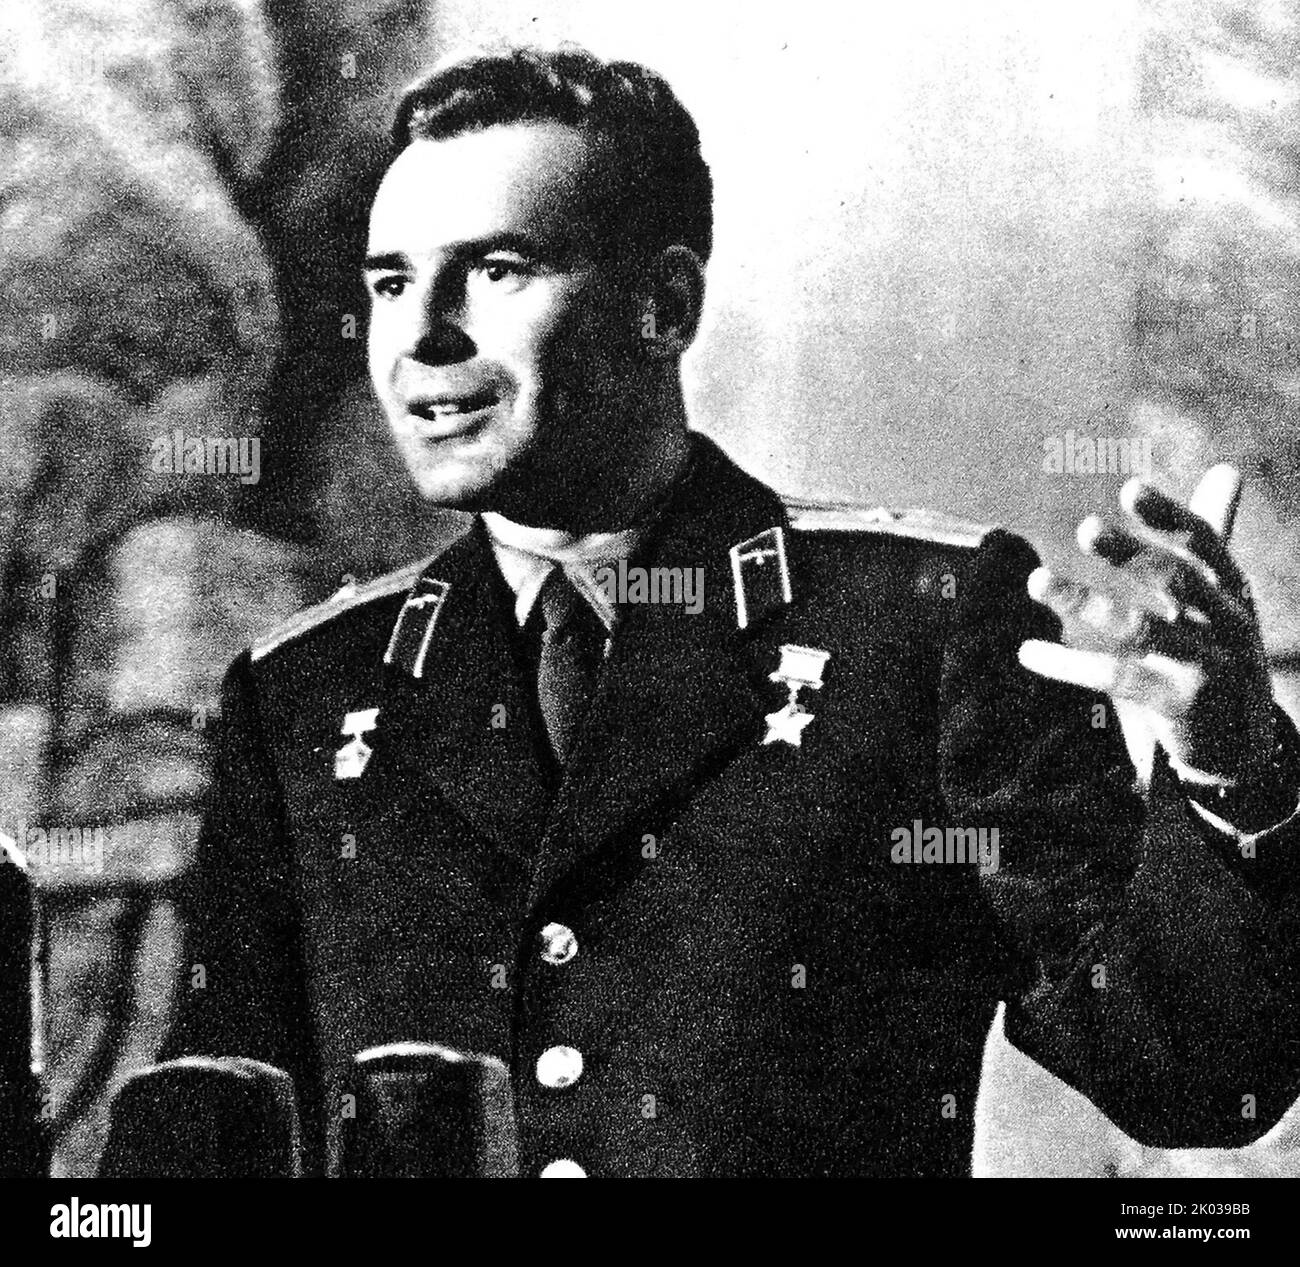 Gherman Stepanovich Titov (1935 - 2000) cosmonaut sovietico che, il 6 agosto 1961, divenne il secondo umano ad orbitare intorno alla Terra, a bordo di Vostok 2, preceduto da Yuri Gagarin su Vostok 1. Foto Stock